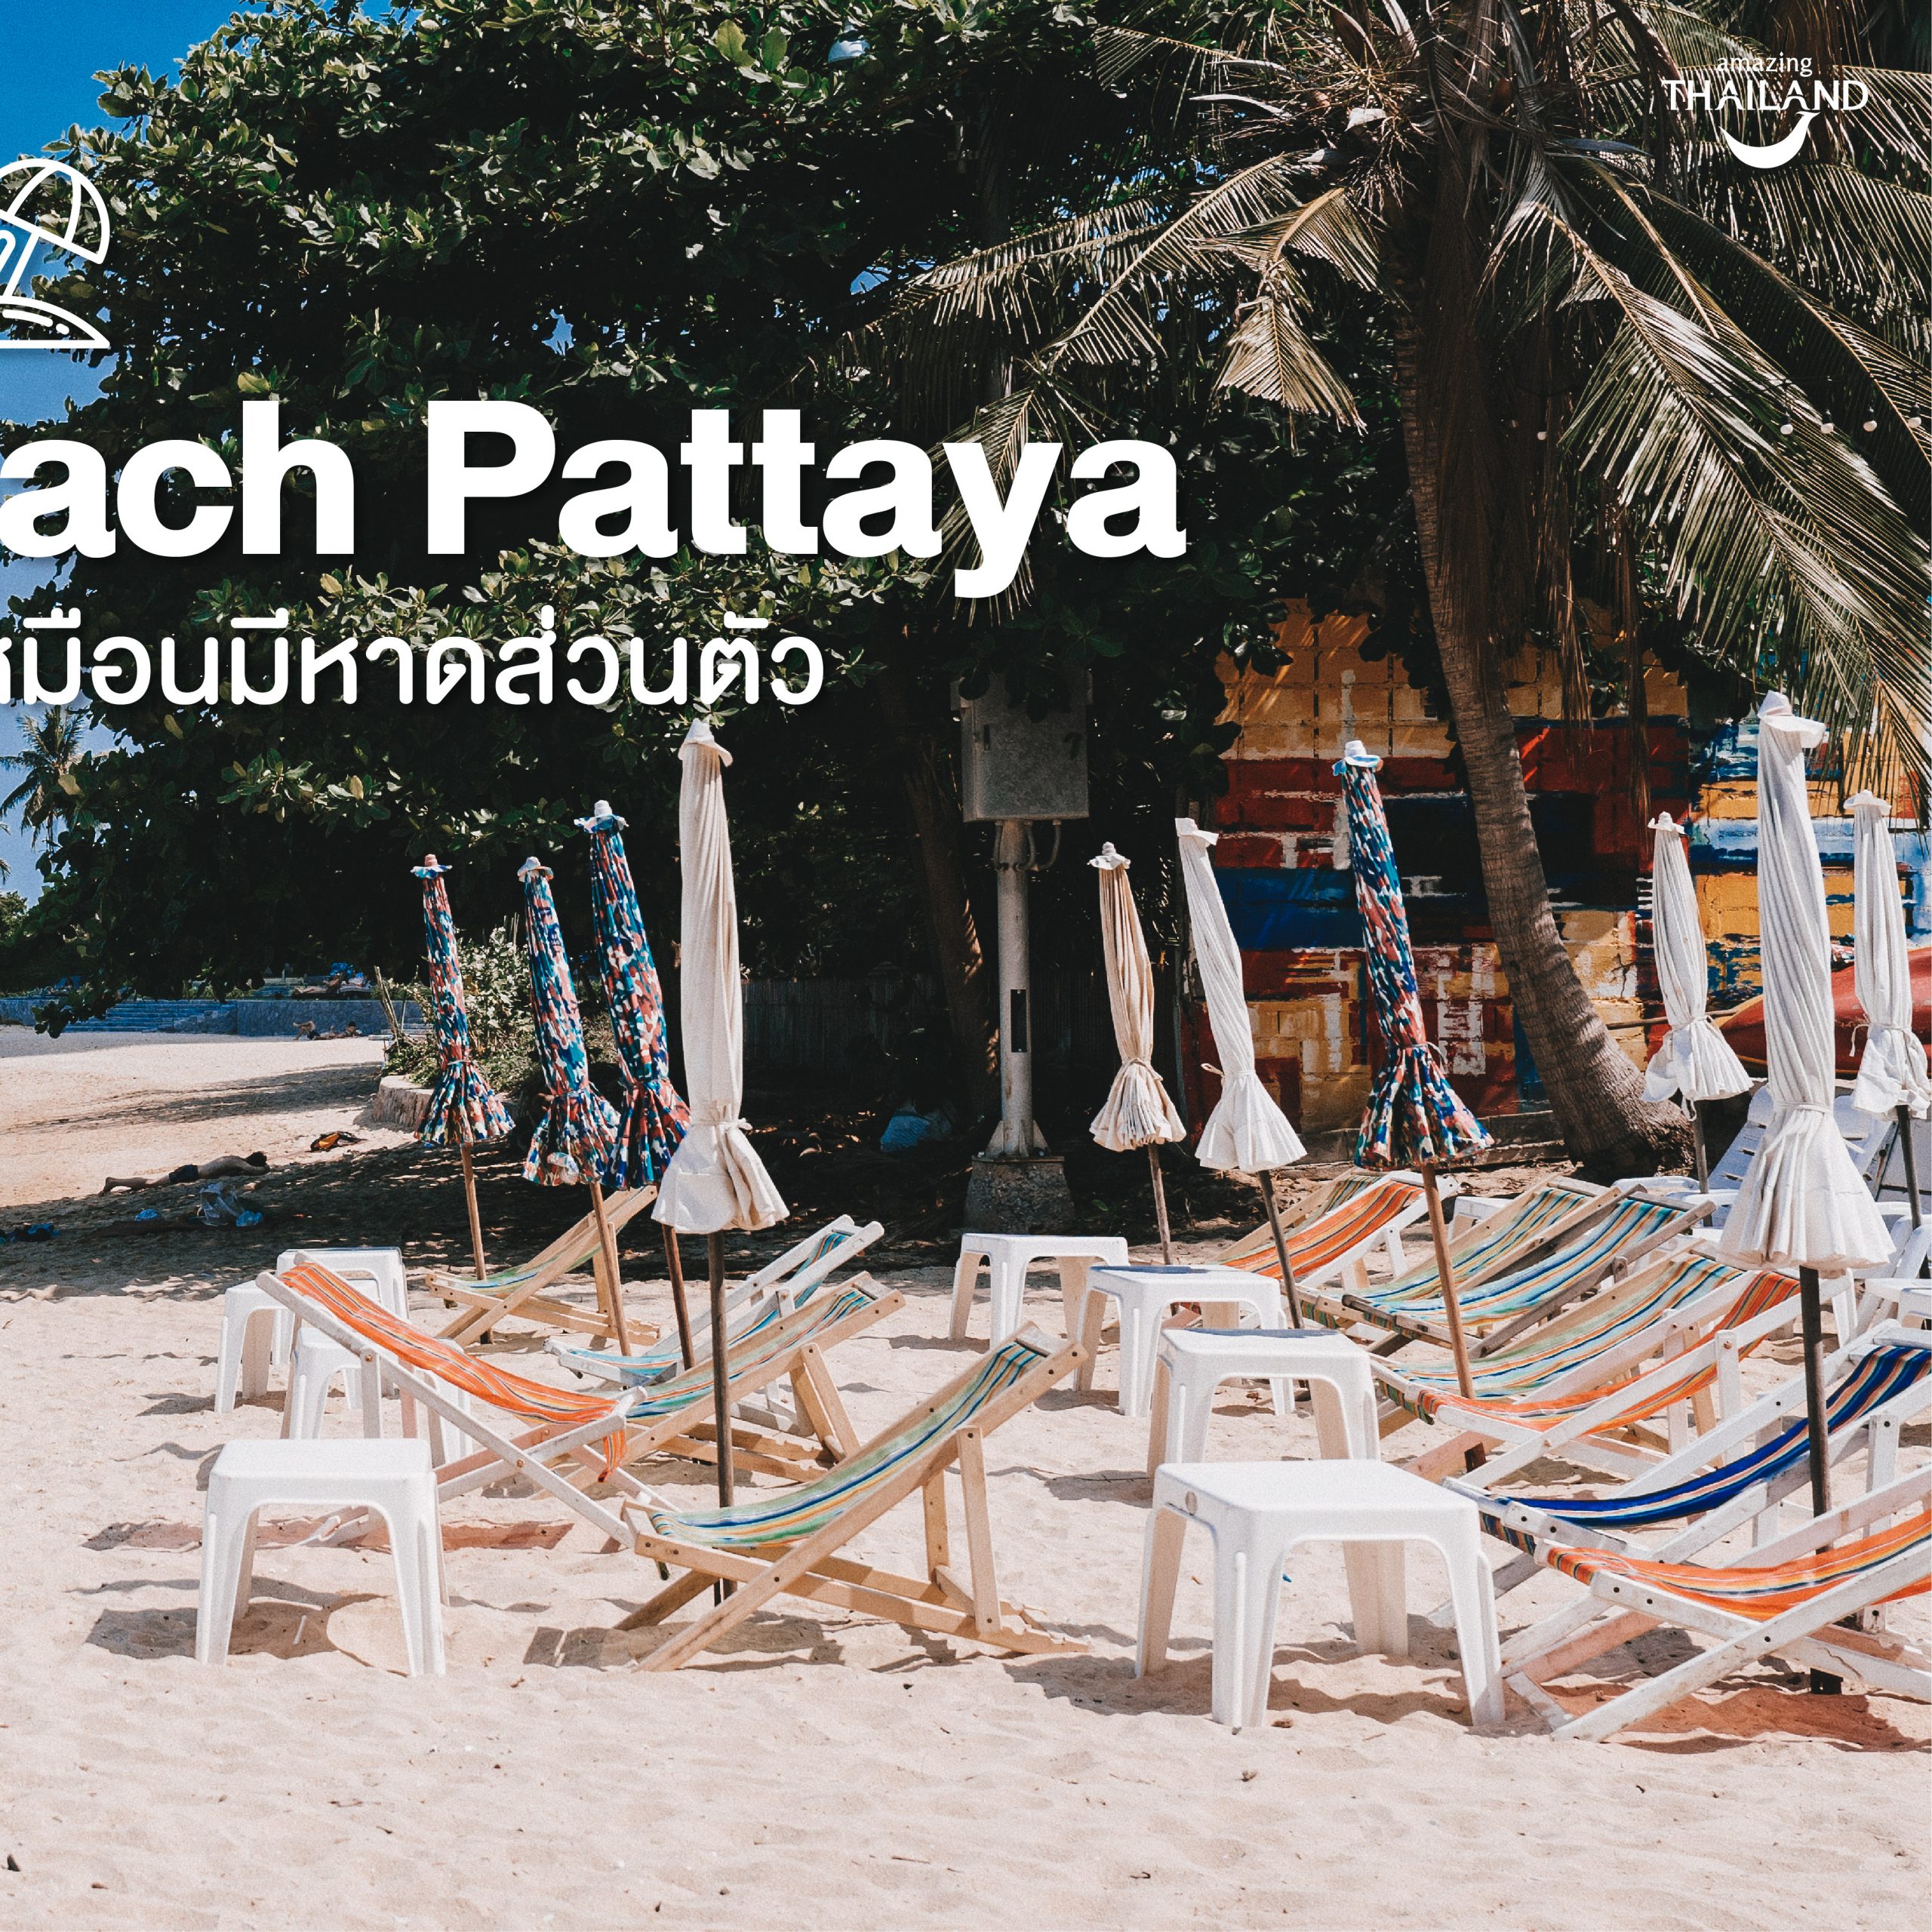 #ChonChecklist ‘Bamboo Beach Pattaya  ชิมวิวชิวริมทะเล เหมือนมีหาดส่วนตัว’